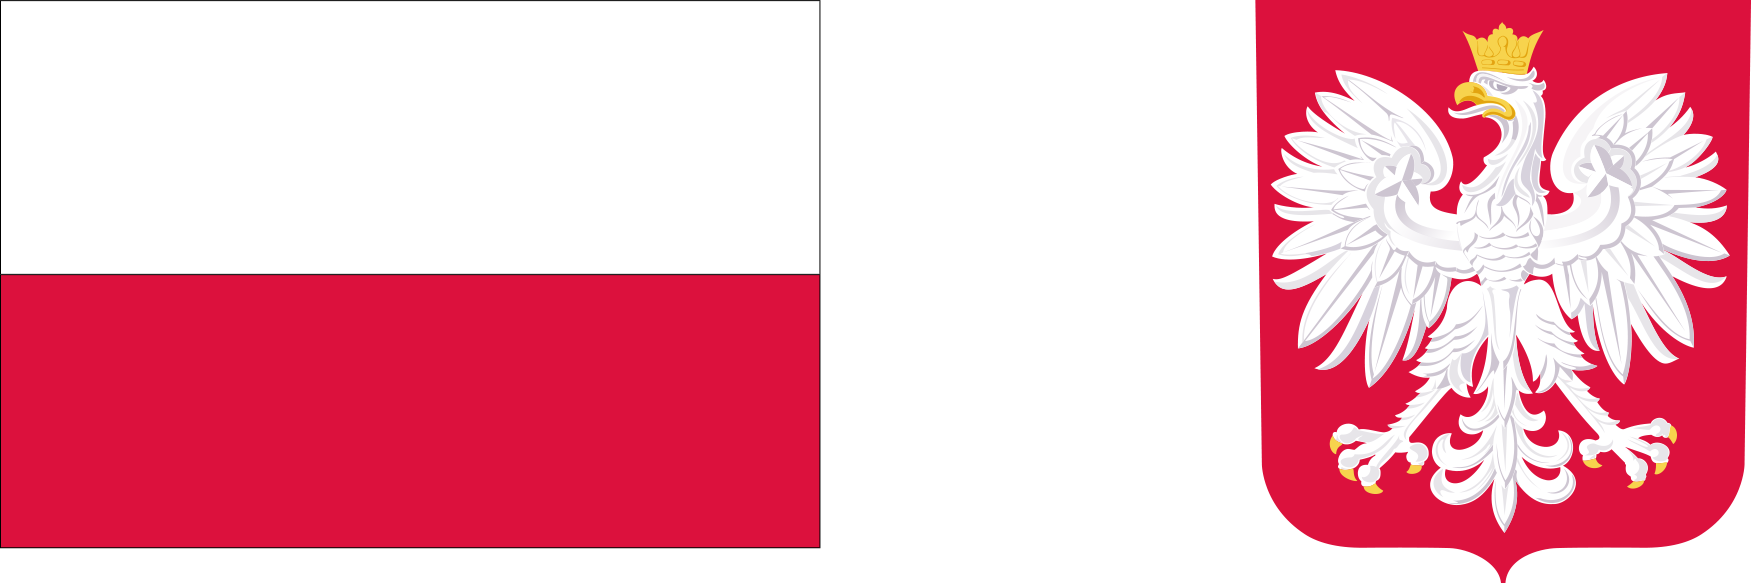 Zdjęcie przedtstawia flagę Polski i herb